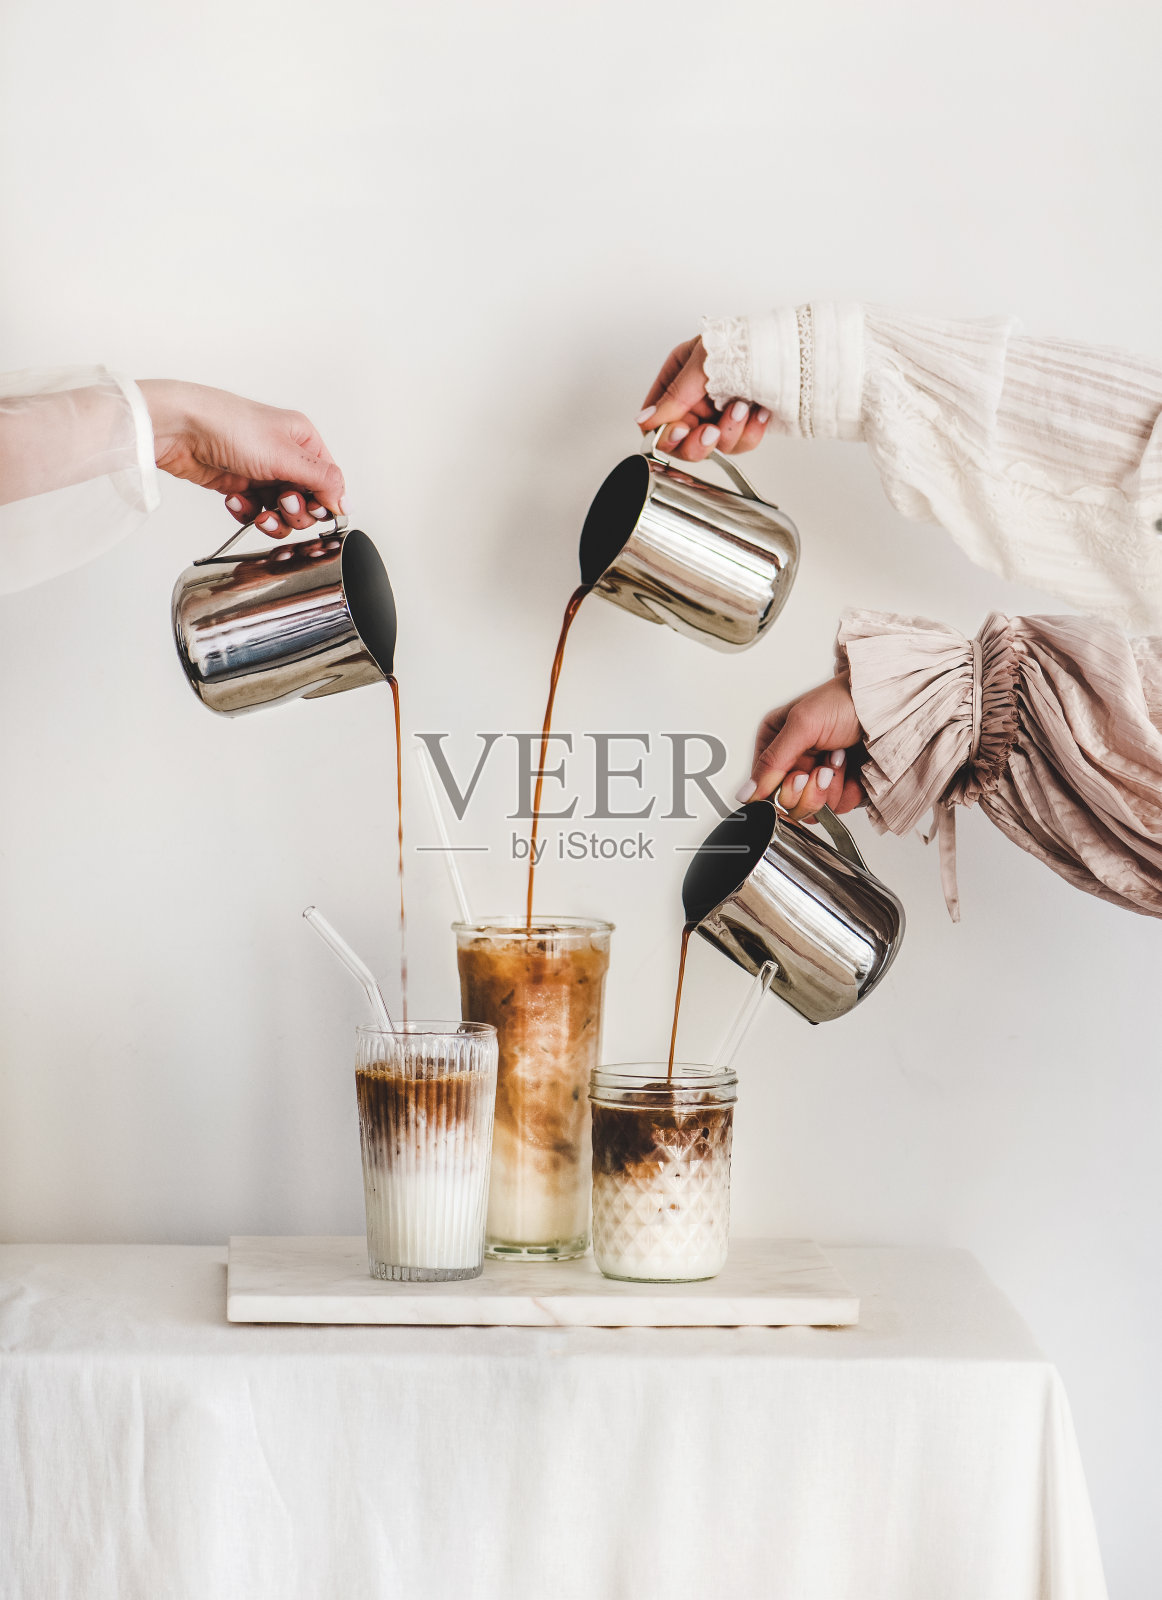 女性用双手将咖啡倒进玻璃杯，加入牛奶，制作拿铁咖啡照片摄影图片